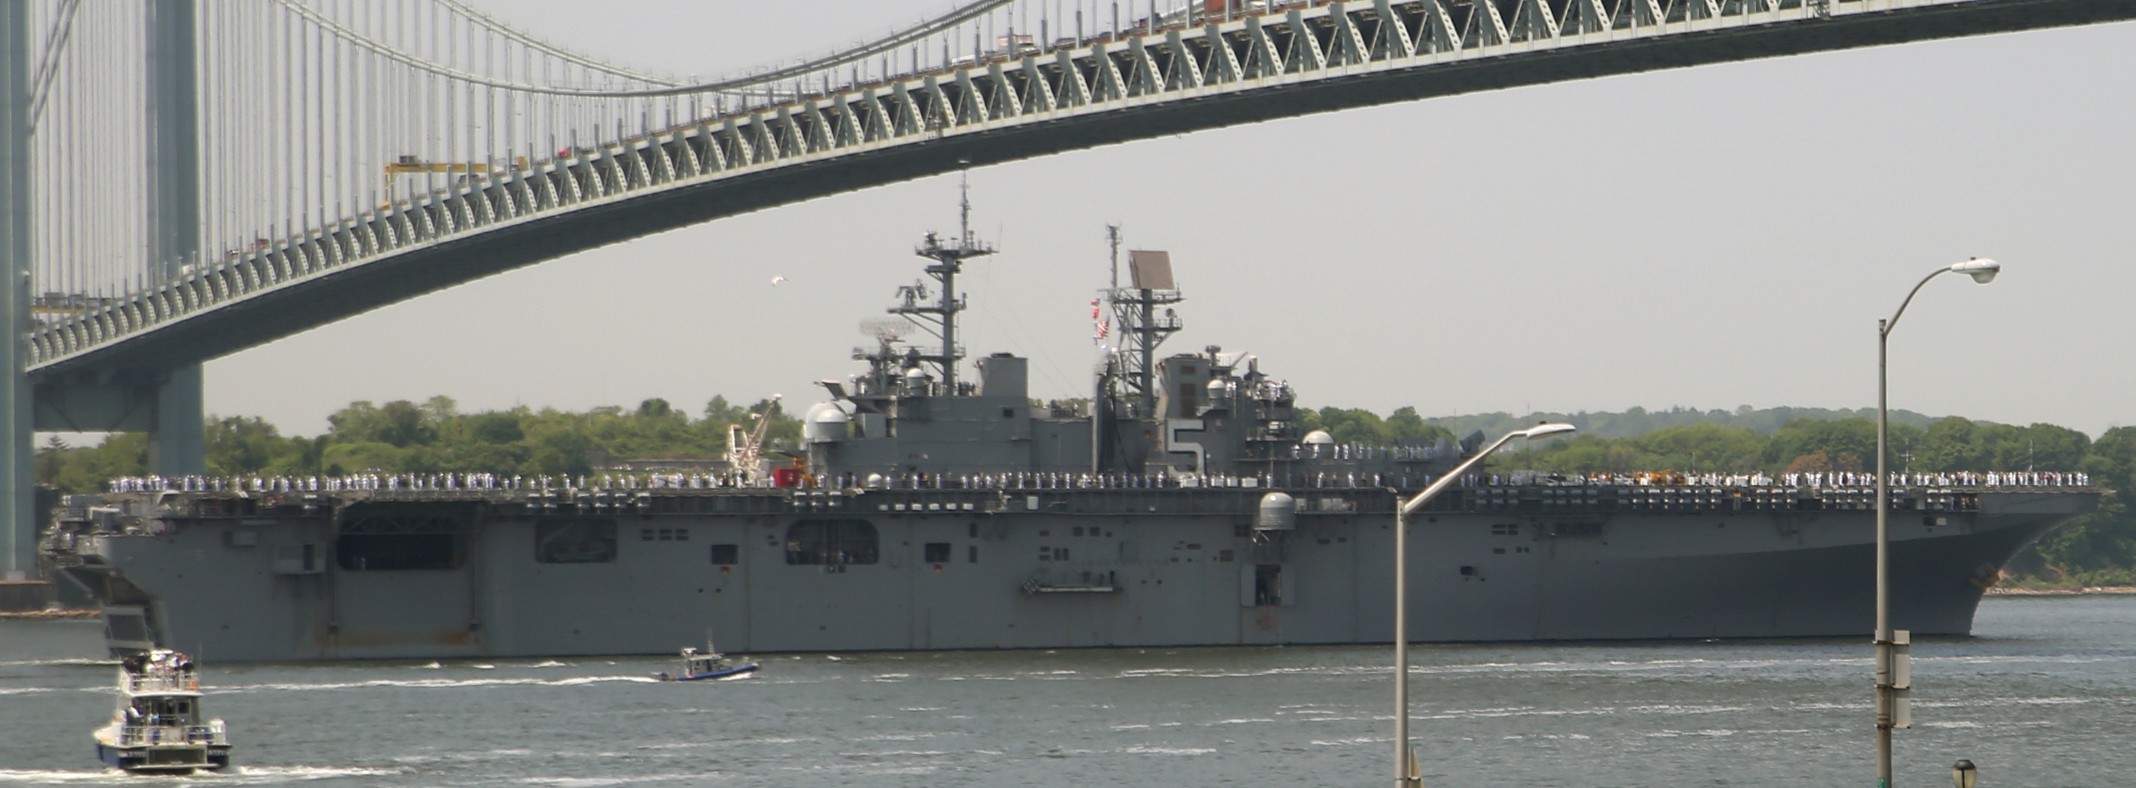 lhd-5 uss bataan wasp class amphibious assault ship dock landing helicopter us navy fleet week new york 113